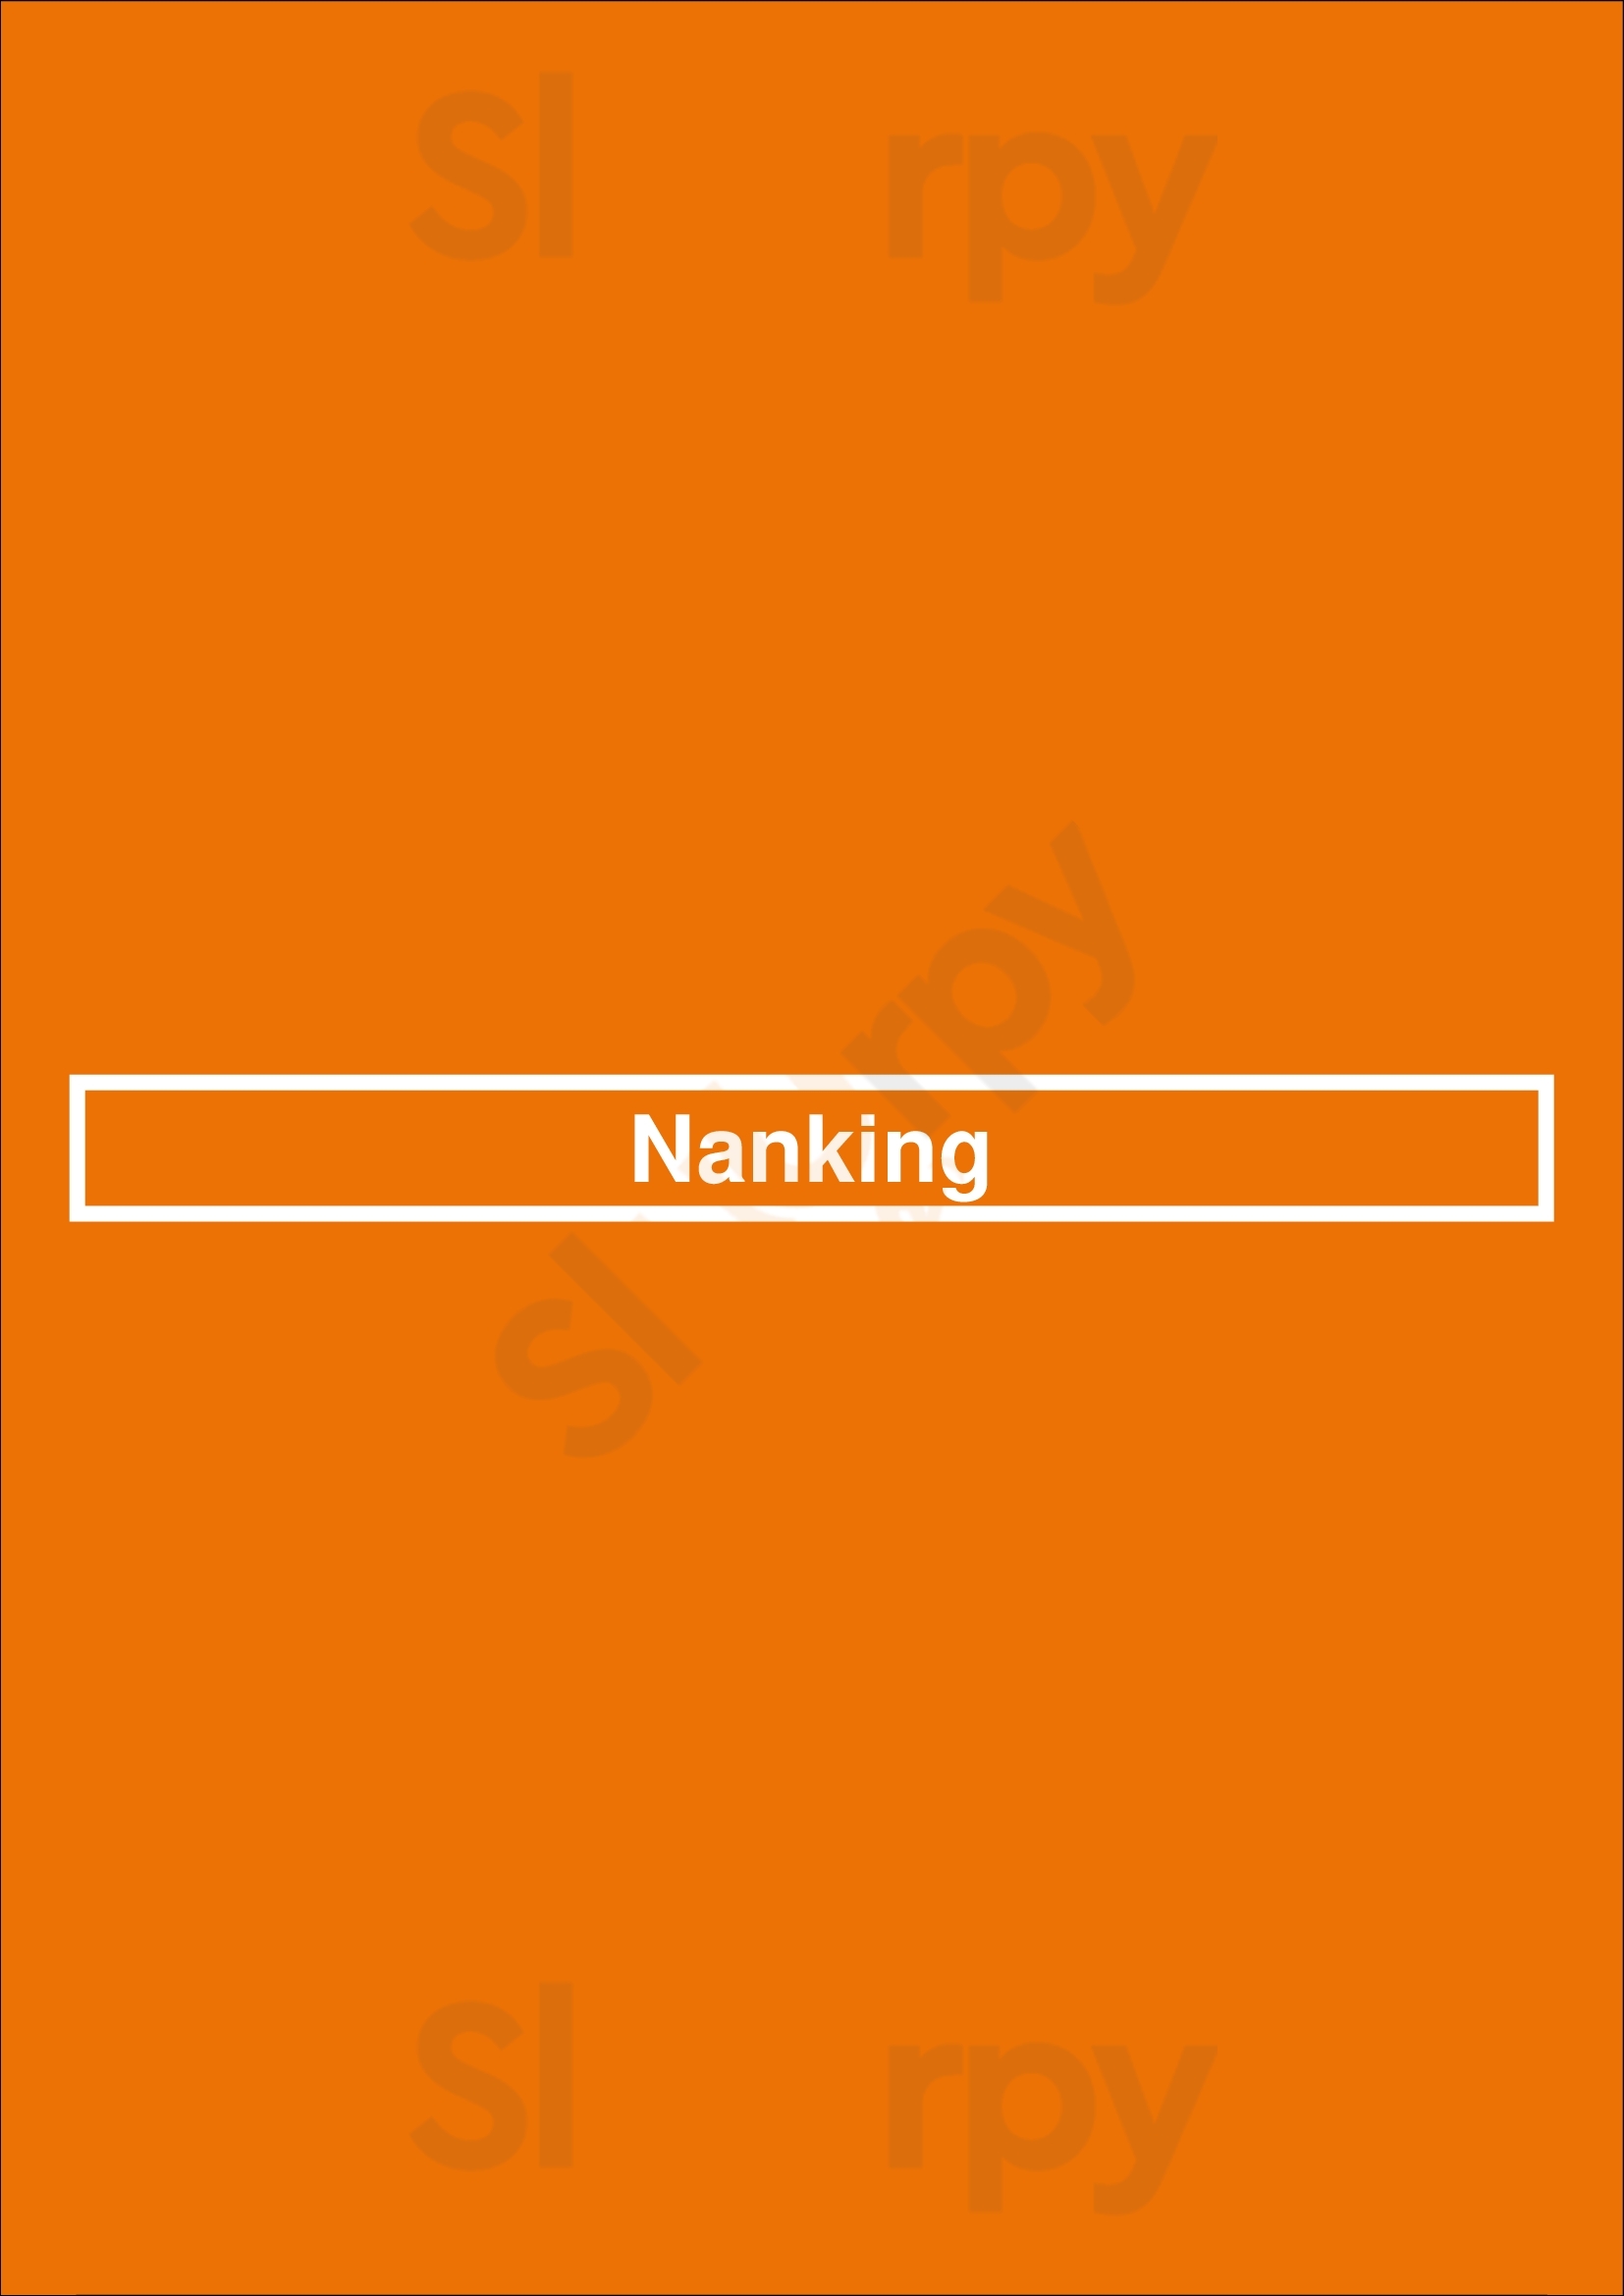 Nanking South Plainfield Menu - 1